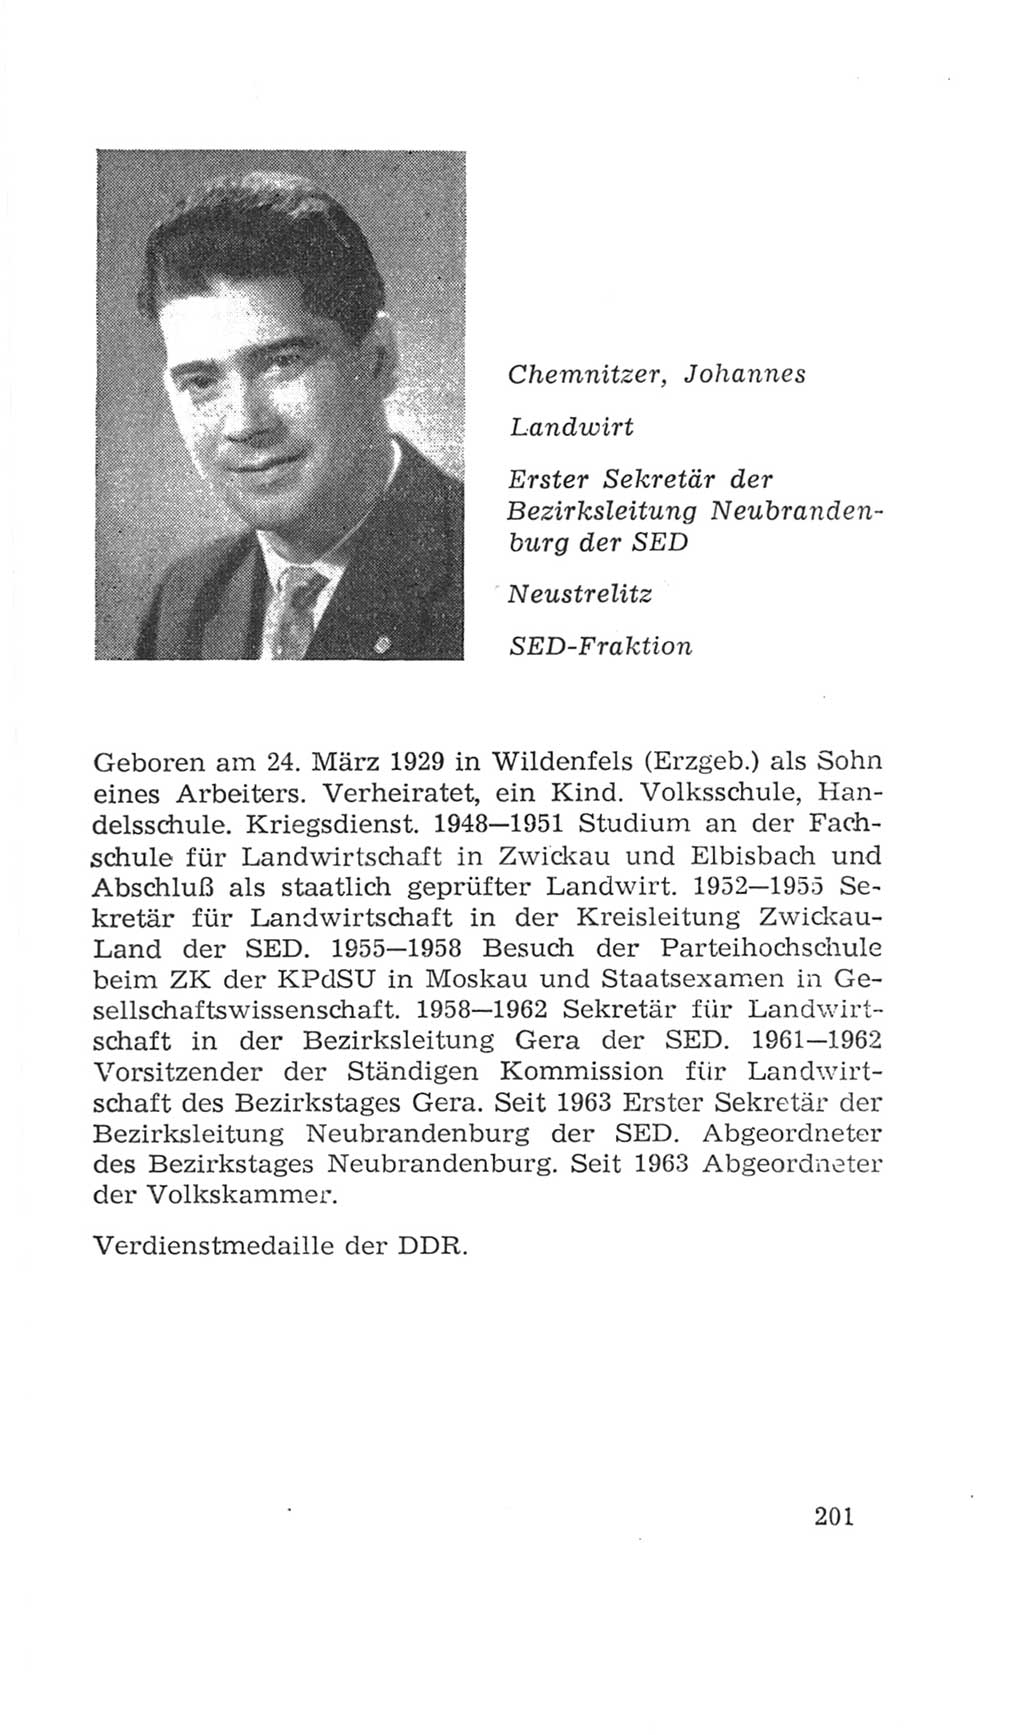 Volkskammer (VK) der Deutschen Demokratischen Republik (DDR), 4. Wahlperiode 1963-1967, Seite 201 (VK. DDR 4. WP. 1963-1967, S. 201)